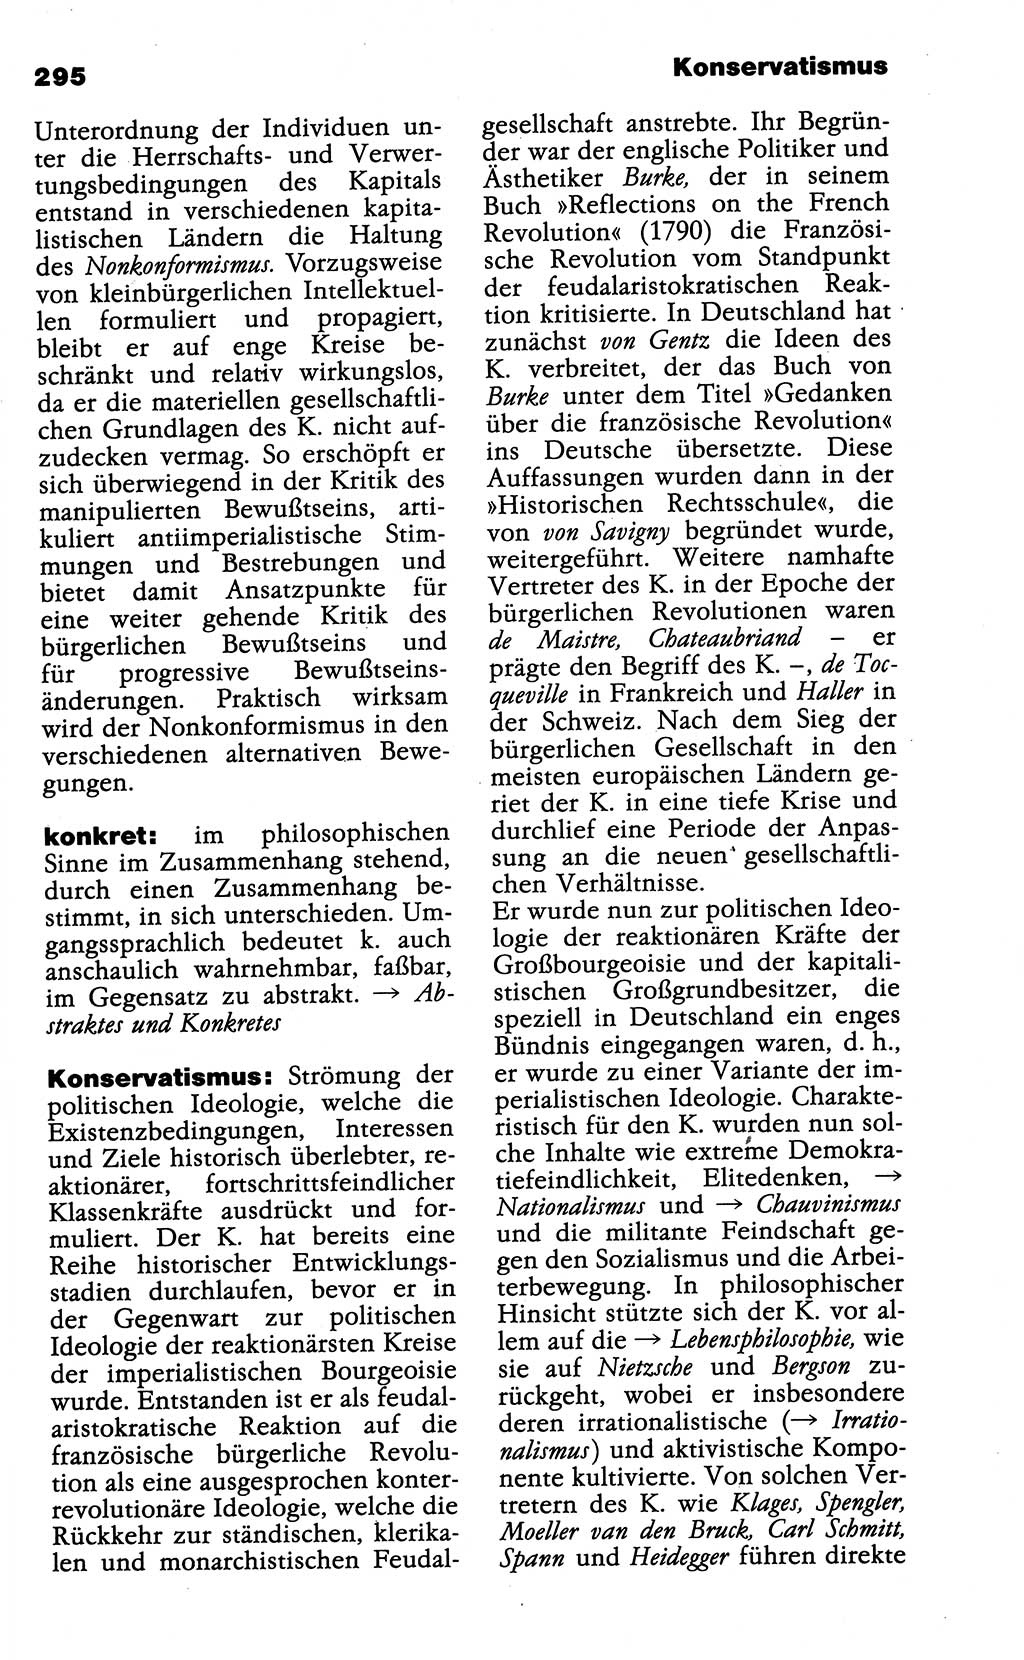 Wörterbuch der marxistisch-leninistischen Philosophie [Deutsche Demokratische Republik (DDR)] 1985, Seite 295 (Wb. ML Phil. DDR 1985, S. 295)